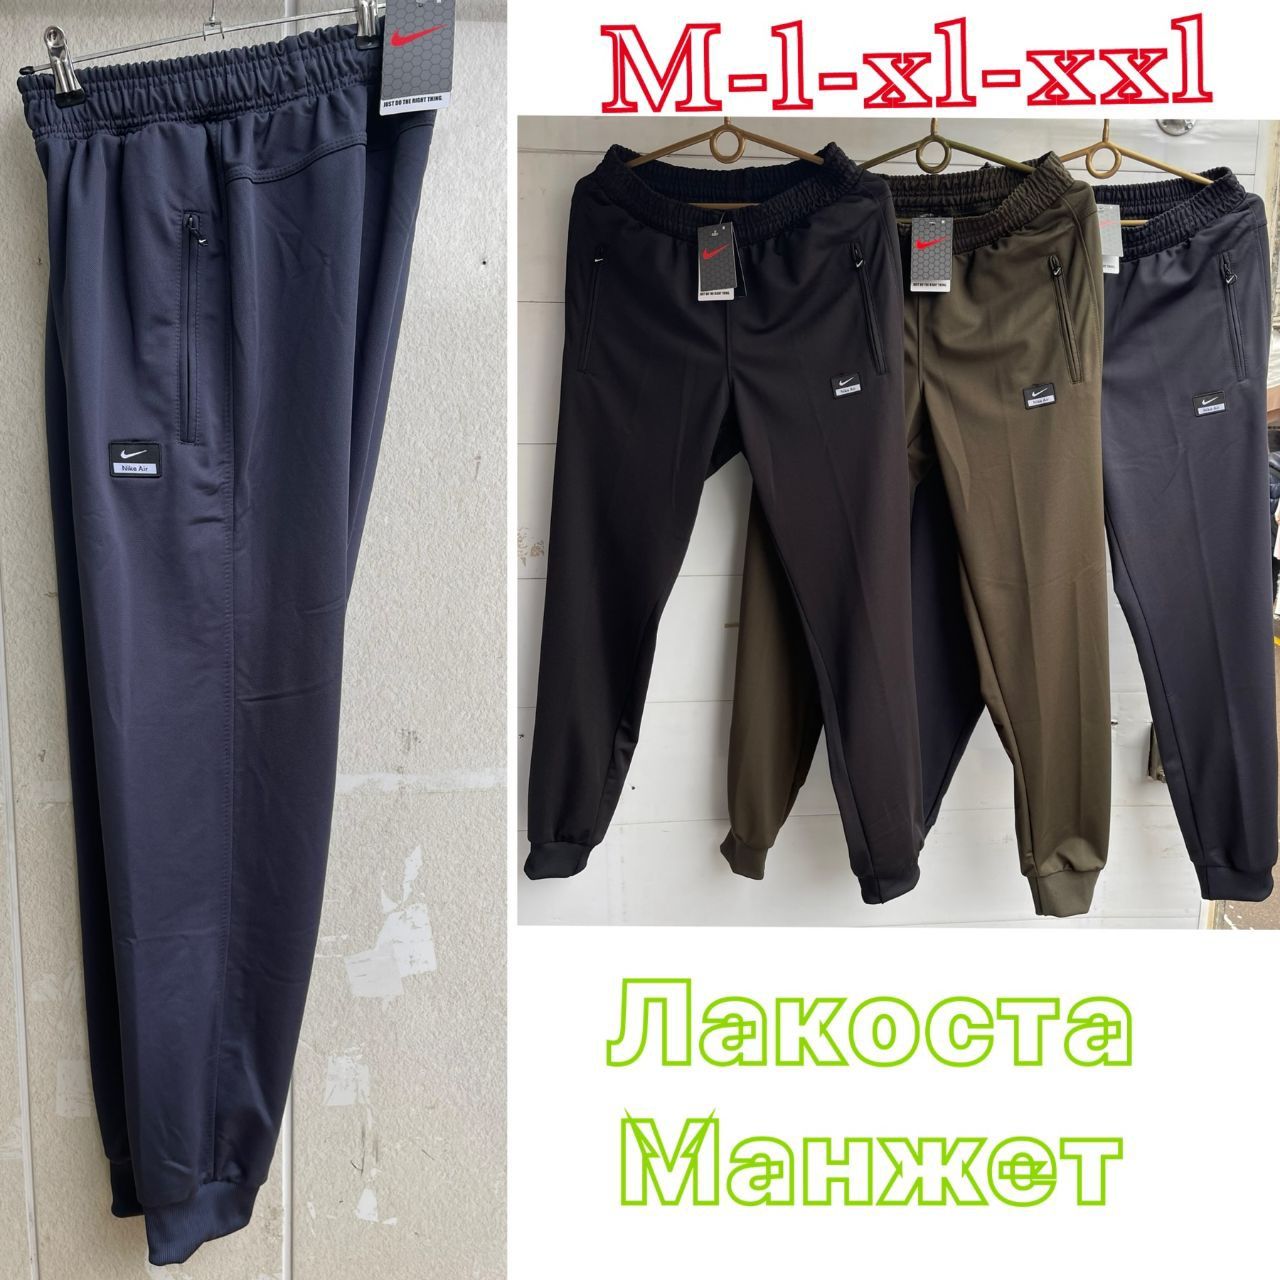 Мужские спортивные штаны Fore/Nike/Adidas в расцветках Норма/Батал